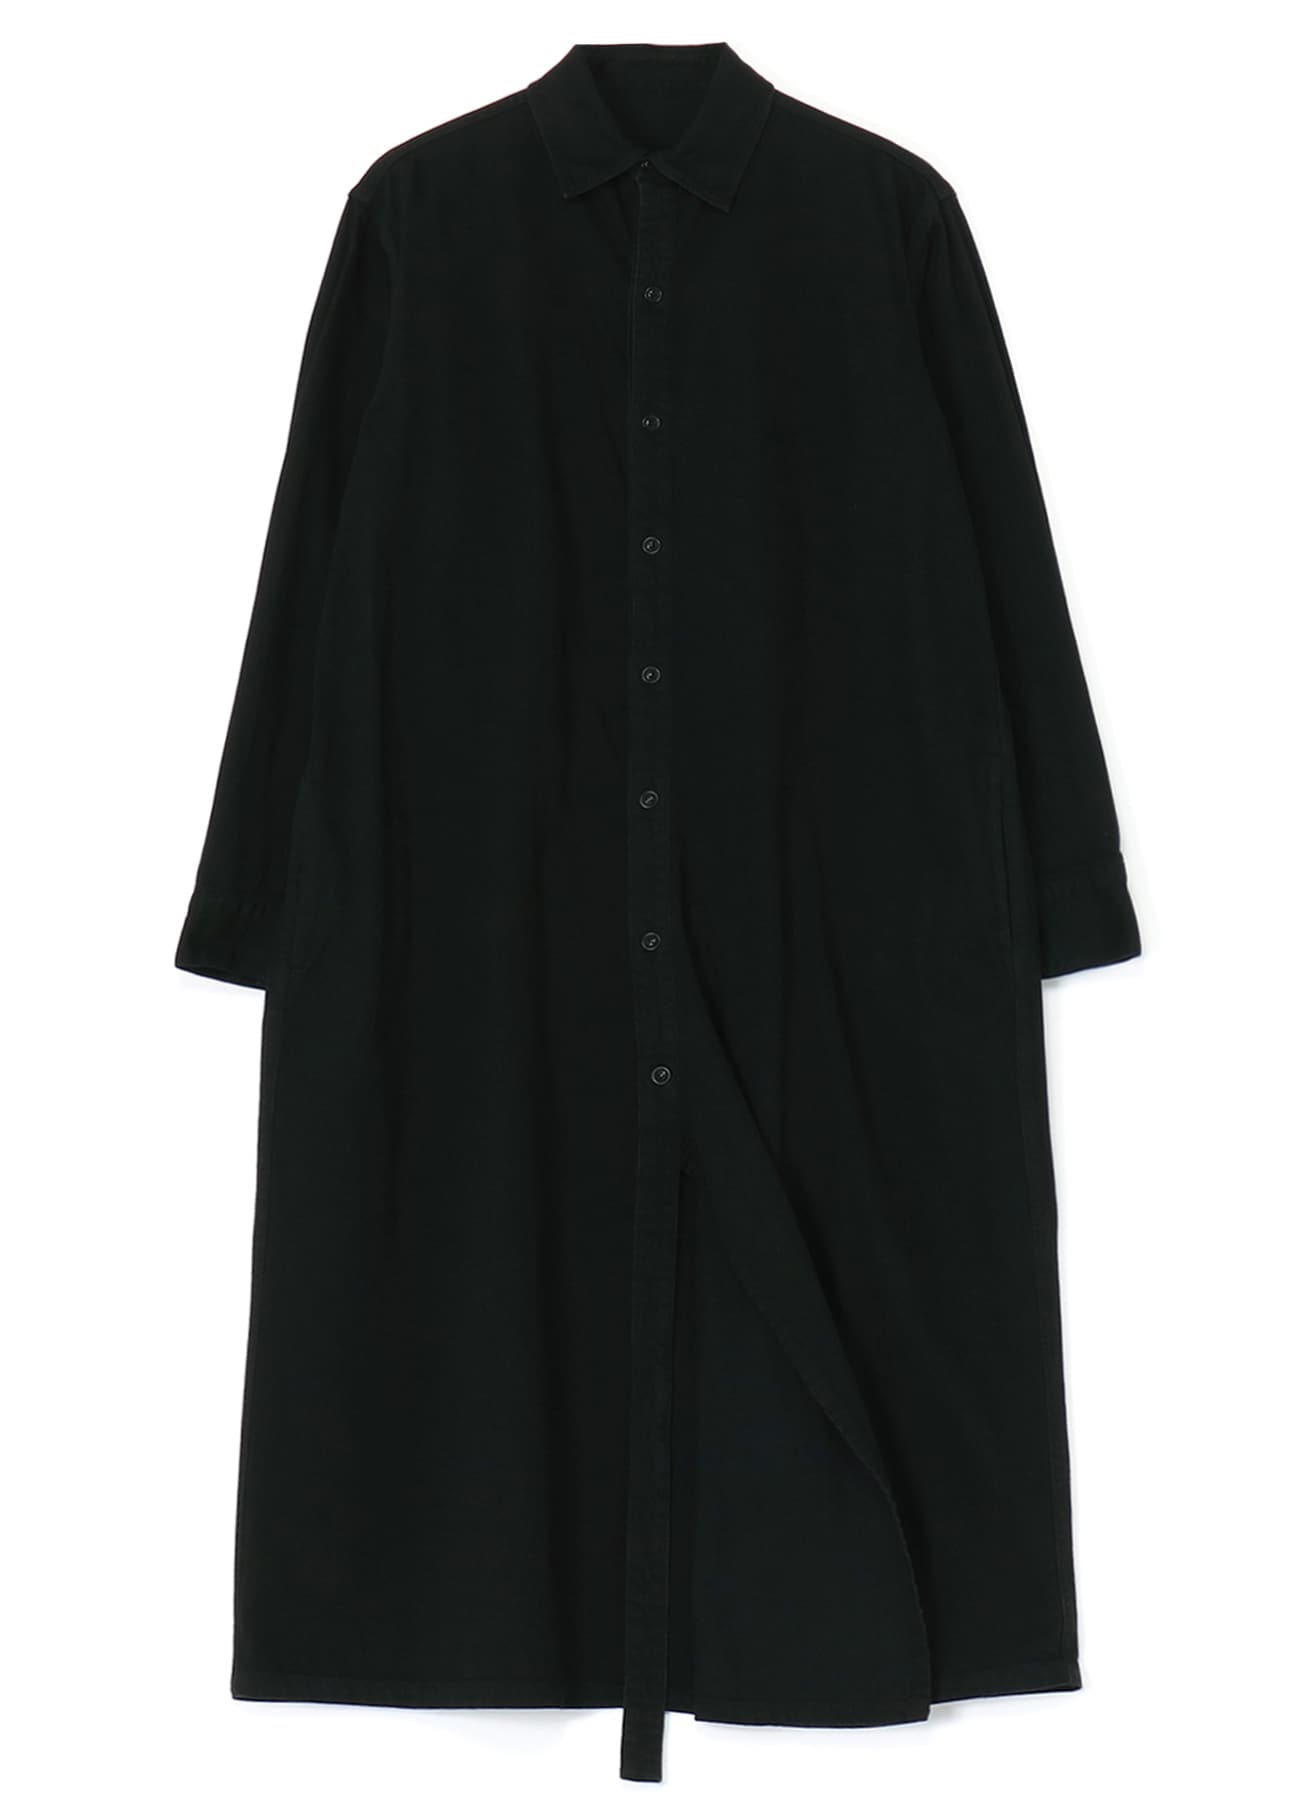 8oz BLACK DENIM DOUBLE PLACKET DRESS(XS Black): Vintage 1.1｜THE 